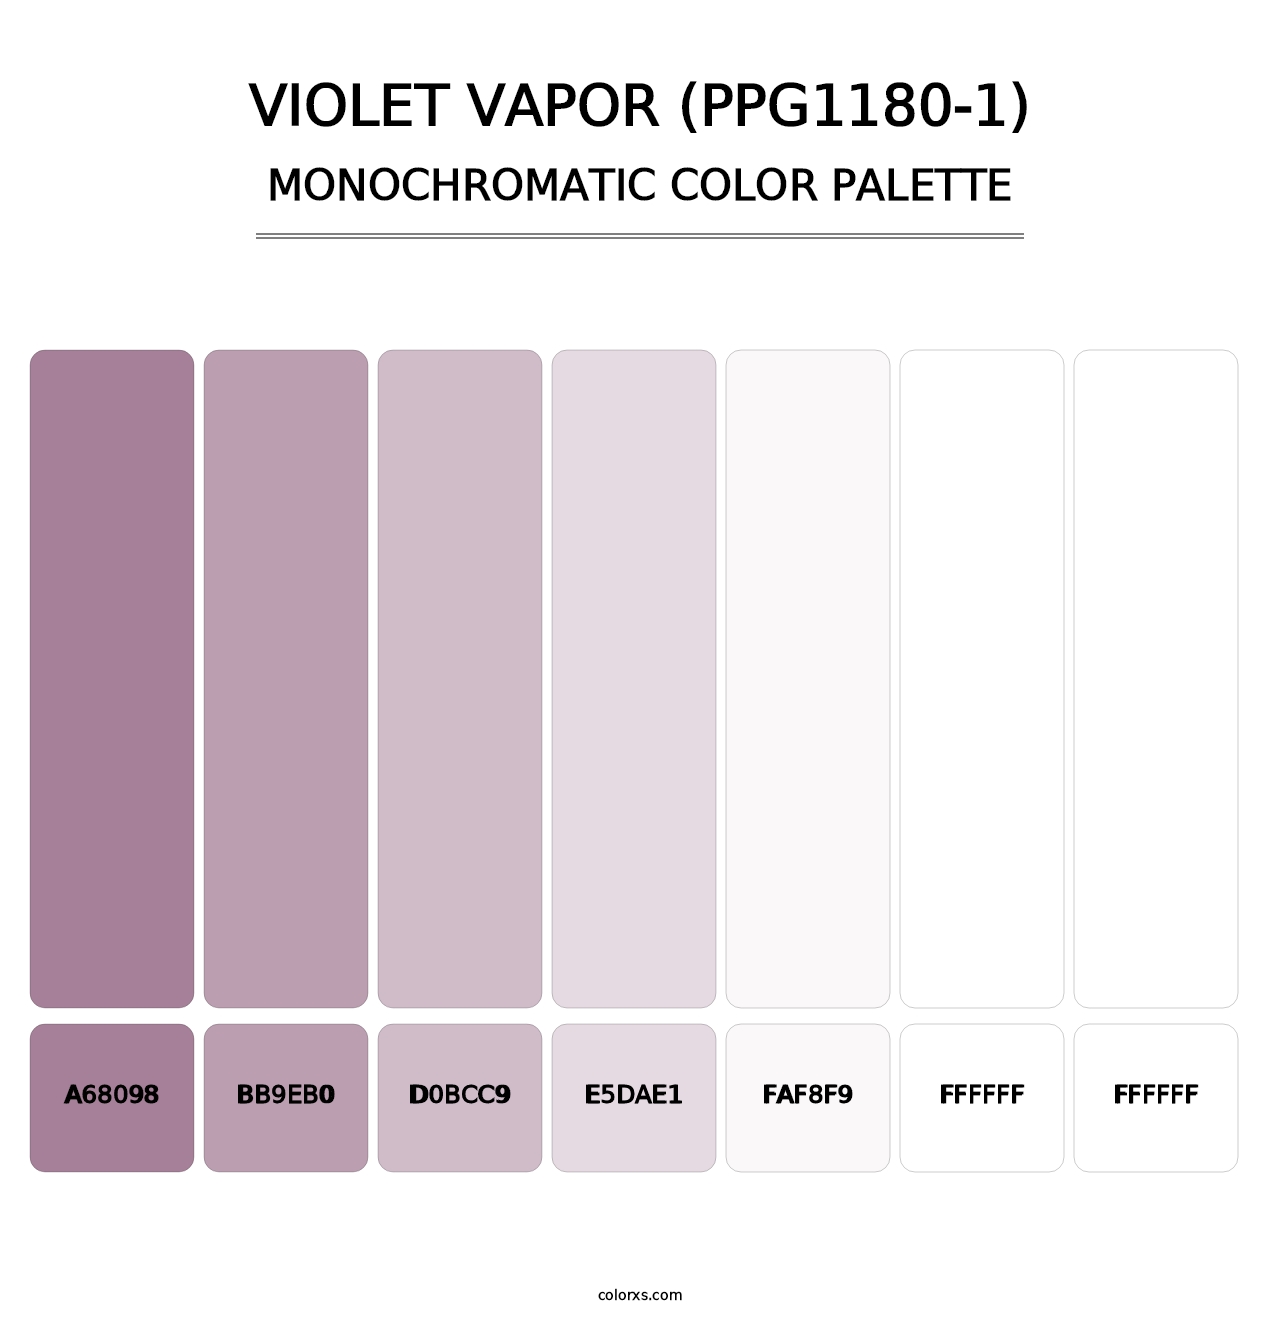 Violet Vapor (PPG1180-1) - Monochromatic Color Palette